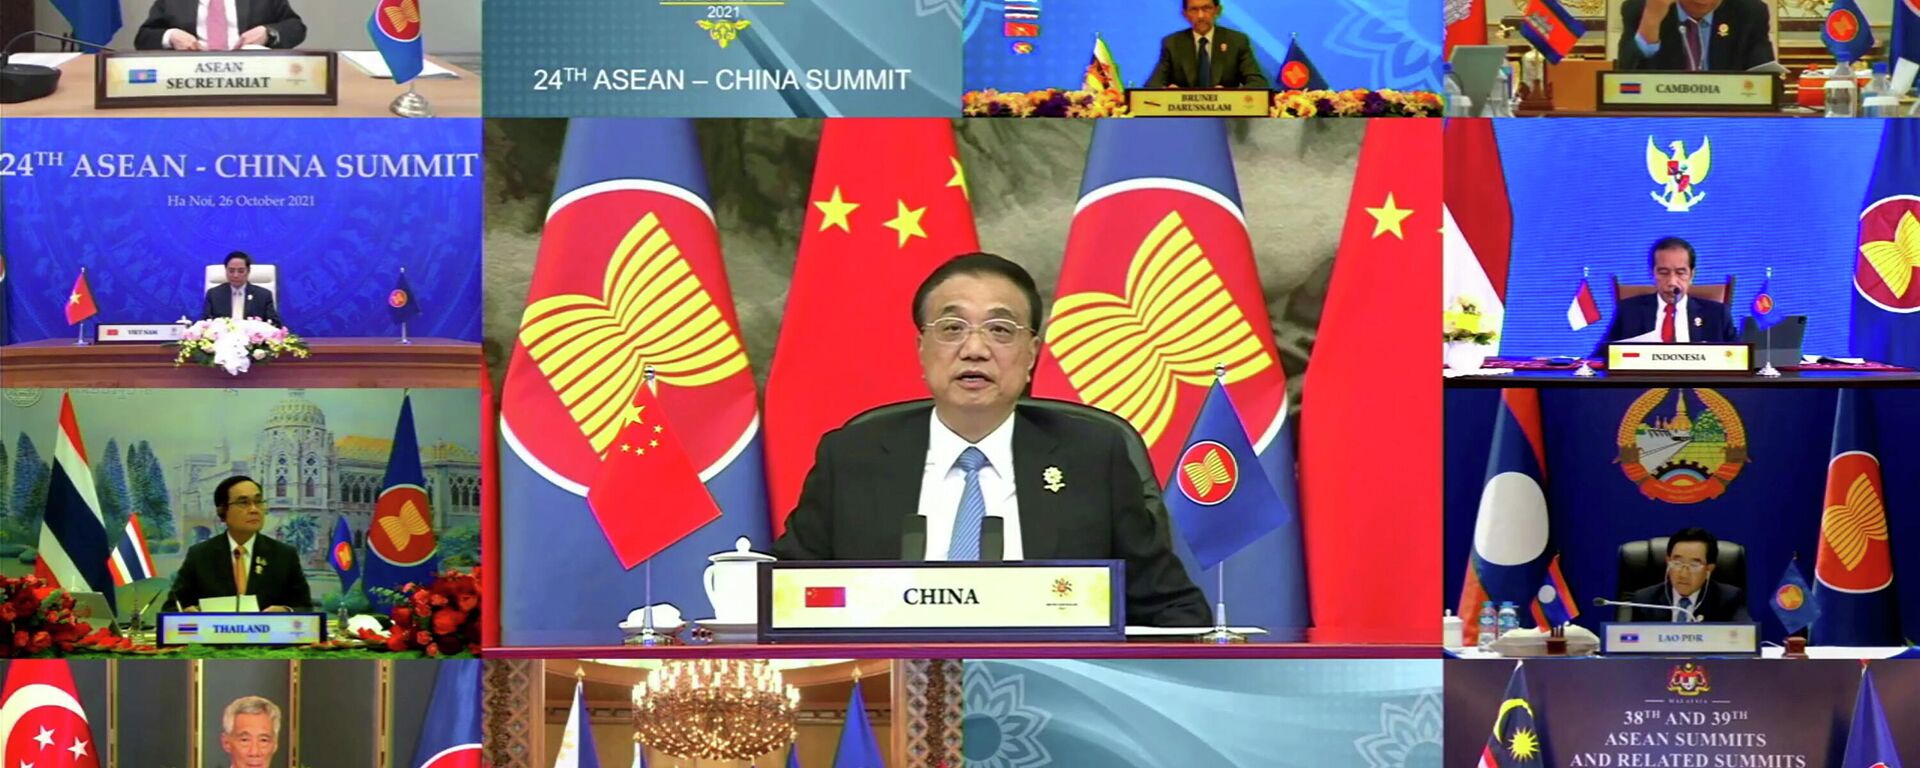 El primer ministro chino, Li Keqiang, da un discurso durante la Cumbre virtual de la ASEAN en China, el 26 de octubre de 2021  - Sputnik Mundo, 1920, 06.11.2021